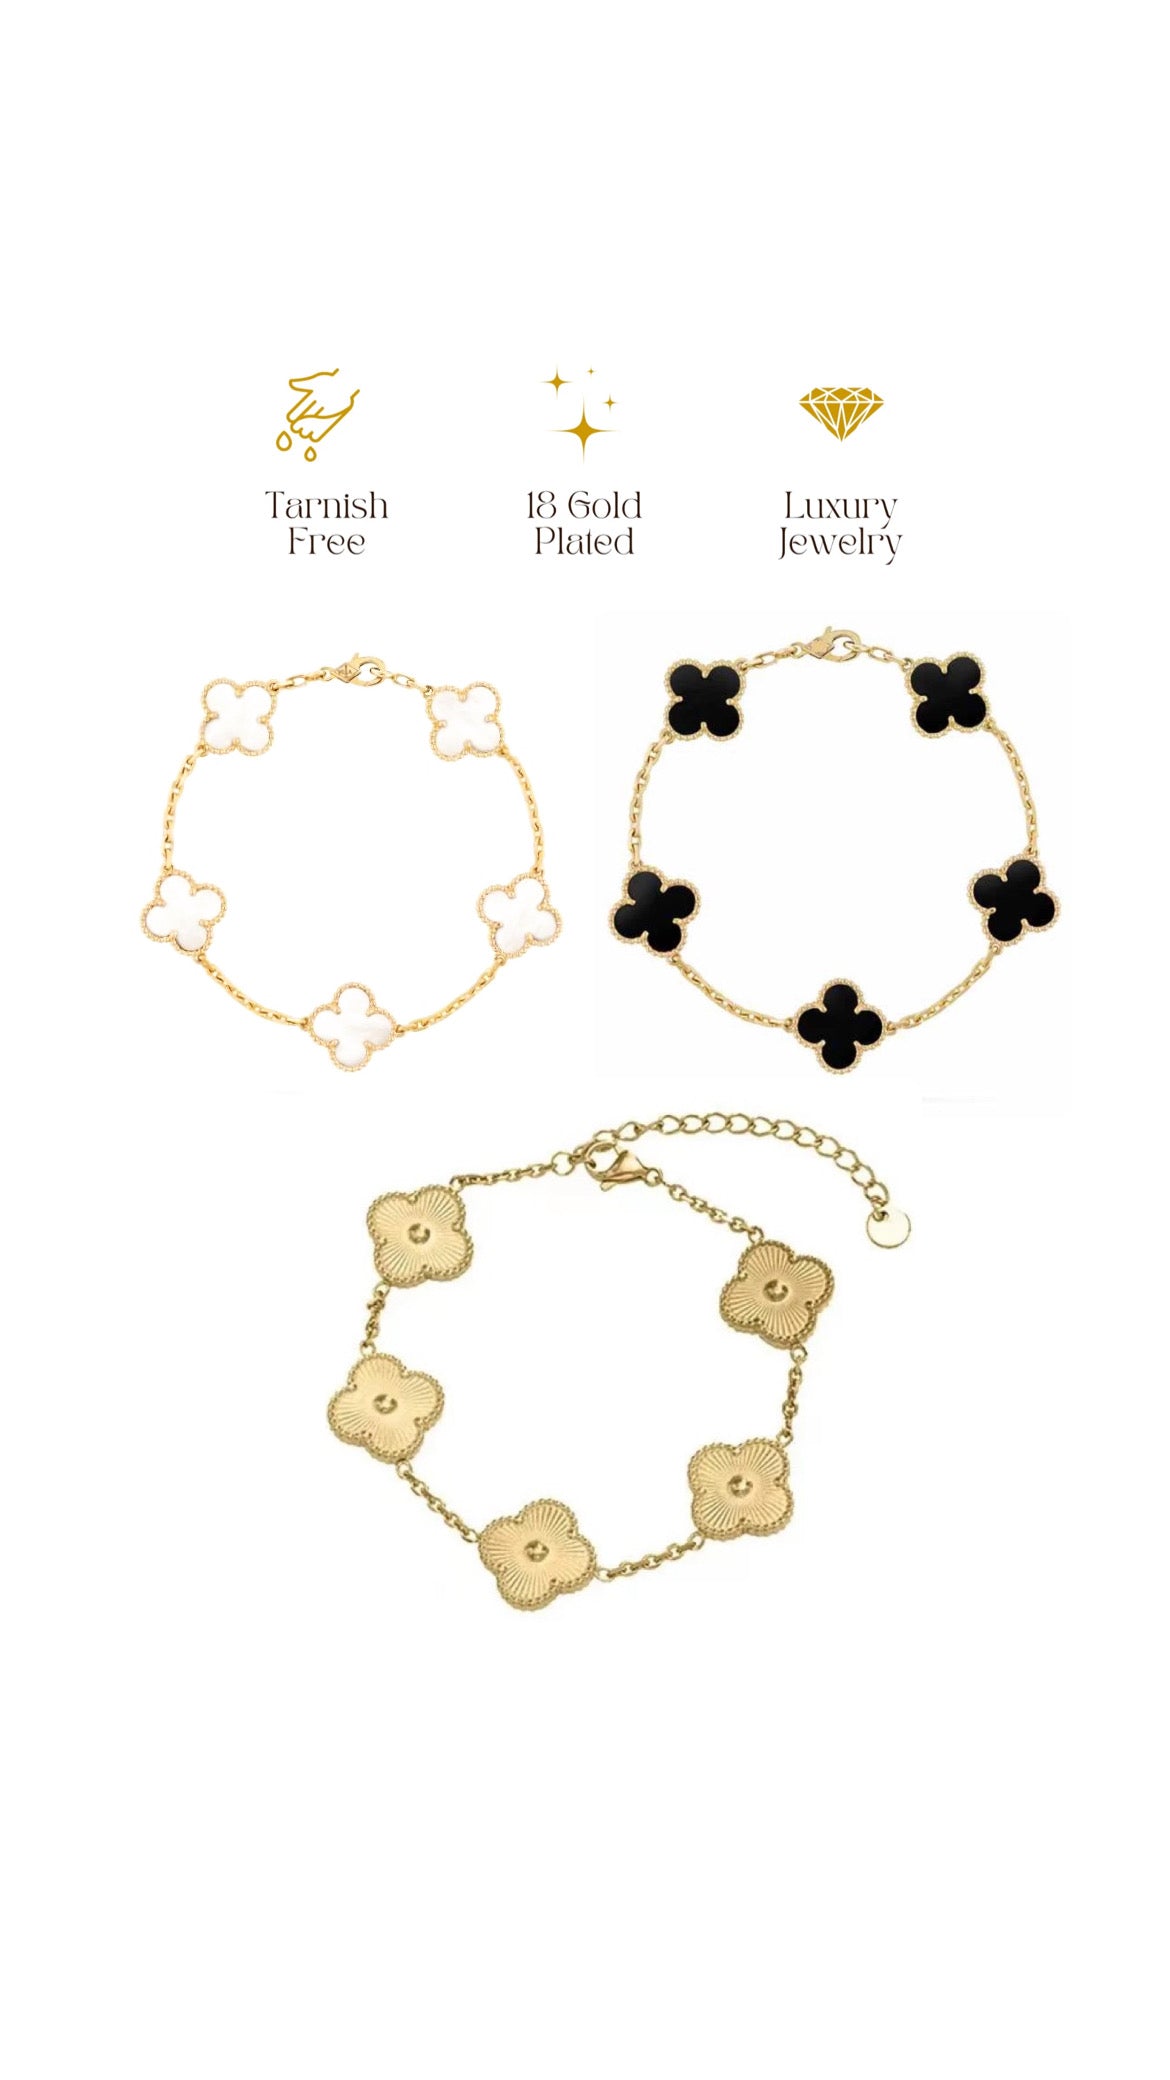 ✨ Best selling 18k Gold 3 Clover bracelet Stack Set ✨